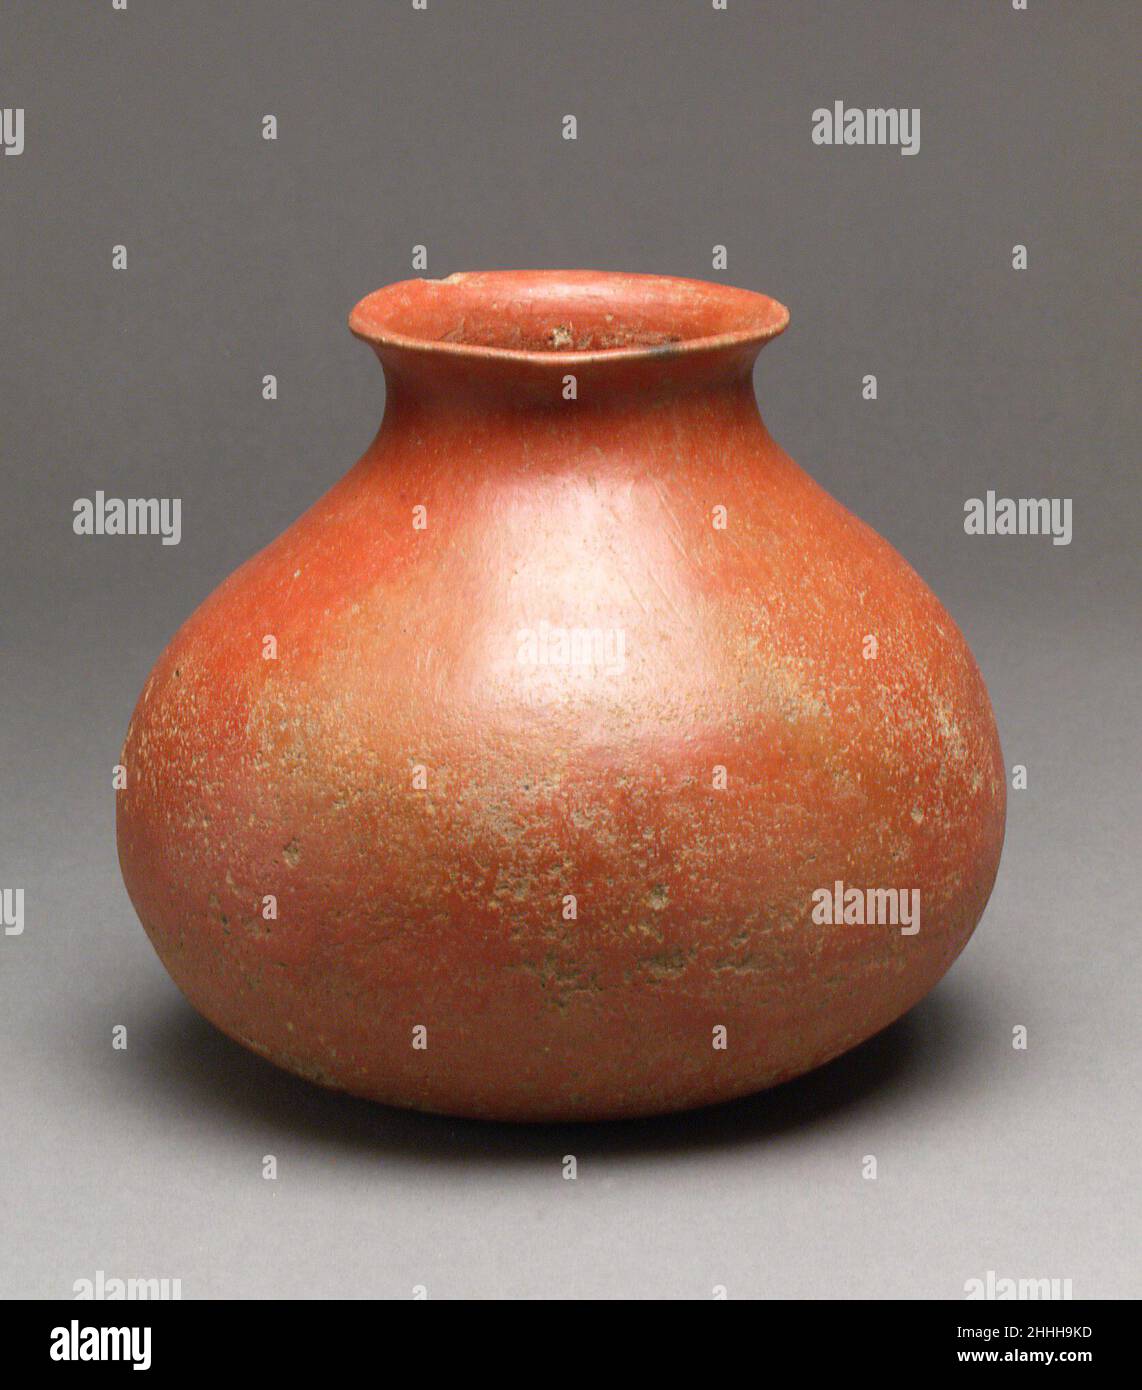 Pot ca.4th Century B.C. Corée la couleur rouge luxuriante de ce pot vient d'un pigment d'oxyde de fer qui a été appliqué et bruni sur le navire avant qu'il ait été tiré.Trouvés principalement dans les tombes, les bocaux tels que cet exemple ont probablement été utilisés dans les rituels funeréal.Pot.Corée. Env.4th siècle C.-B..Faïence rouge brunie. Fin de l'âge de bronze (env.15th environ3rd siècle avant J.-C.).Céramique Banque D'Images